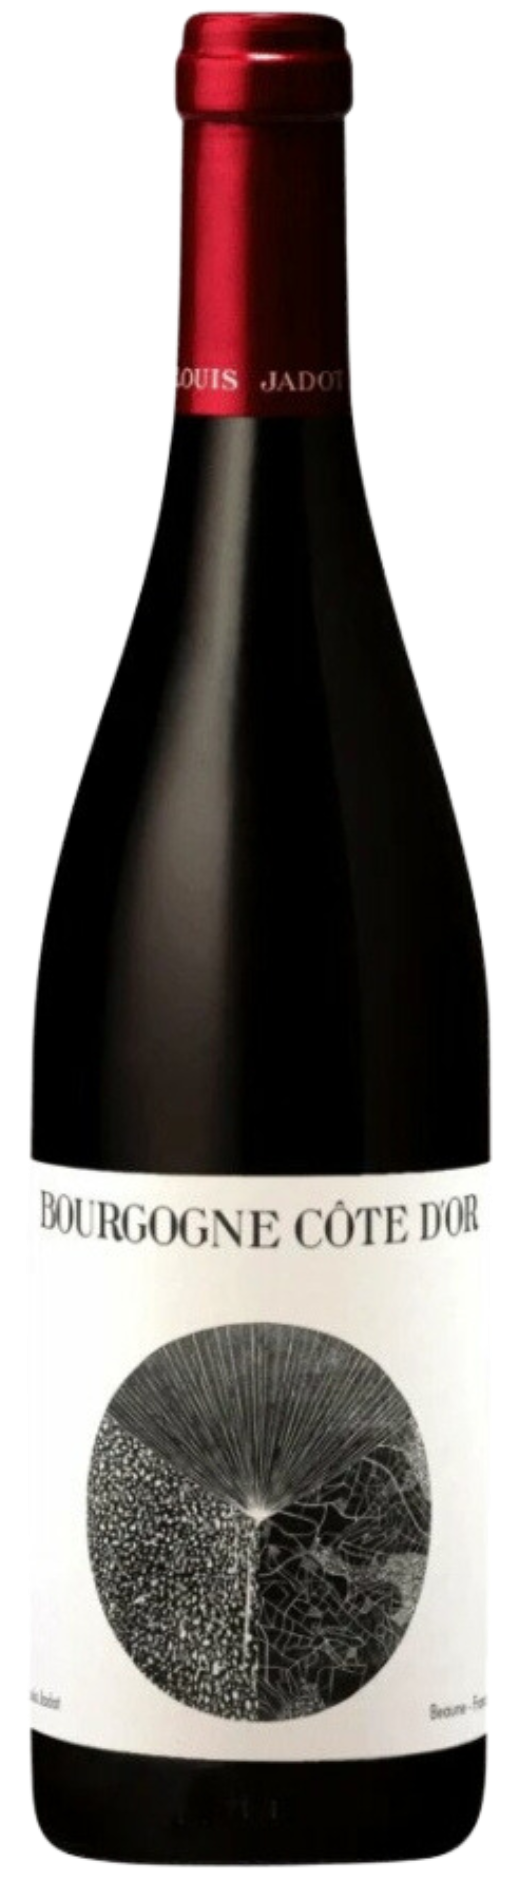 Bourgogne Cote d' Or Pinot Noir, Bor - Louis Jadot